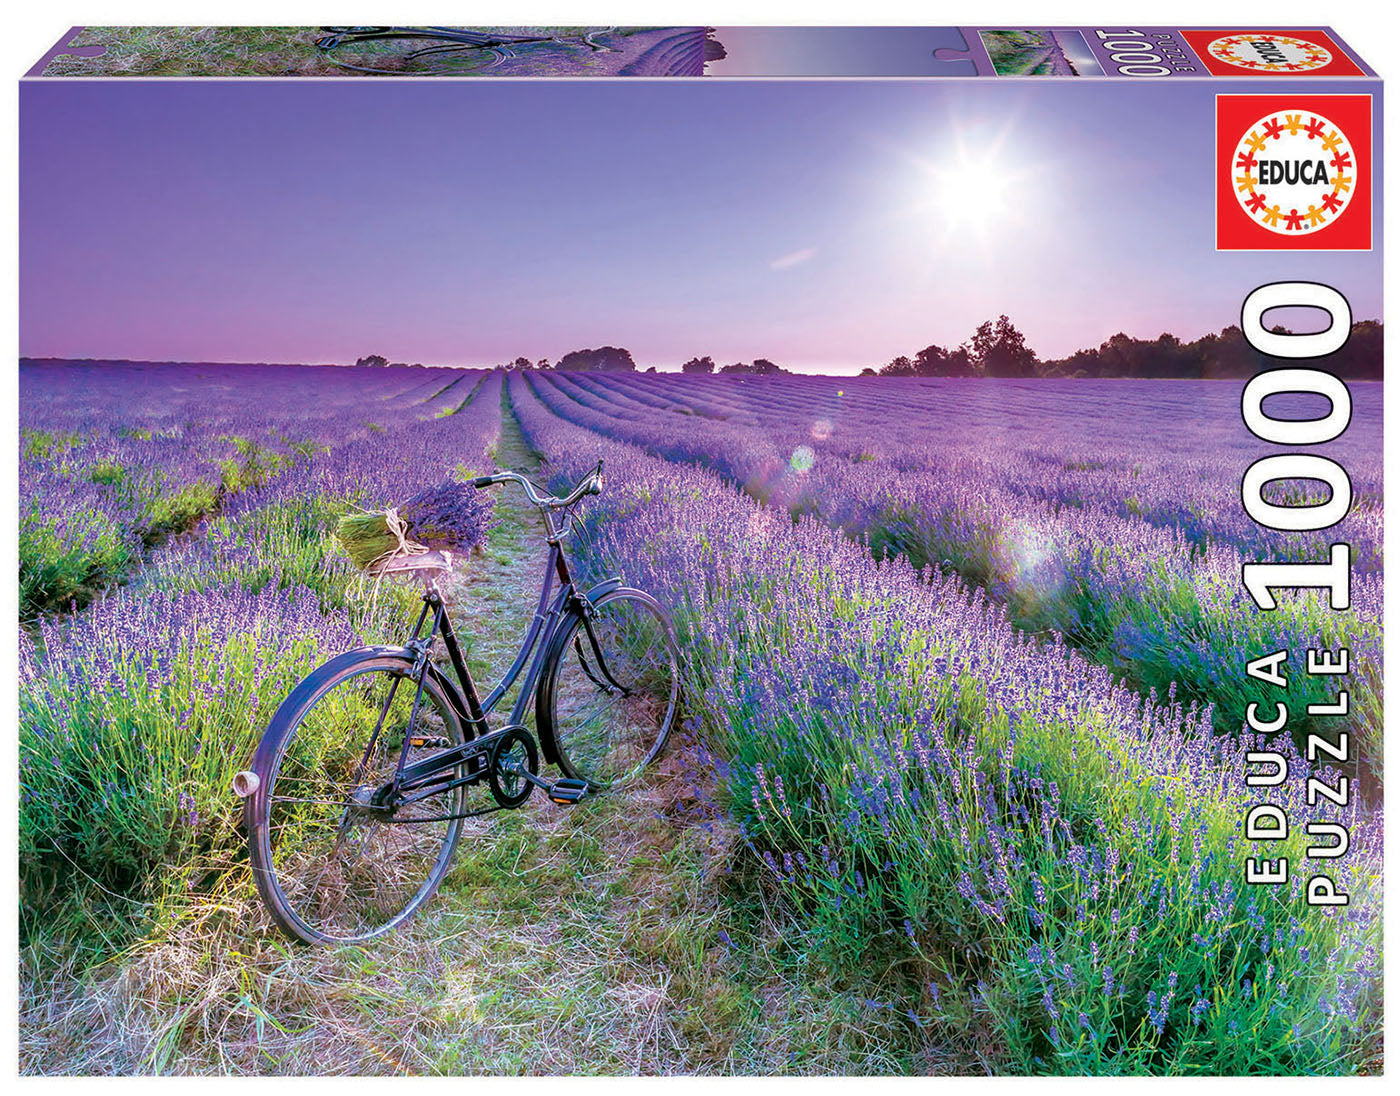 Bike in Lavender Field 1000pc Educa